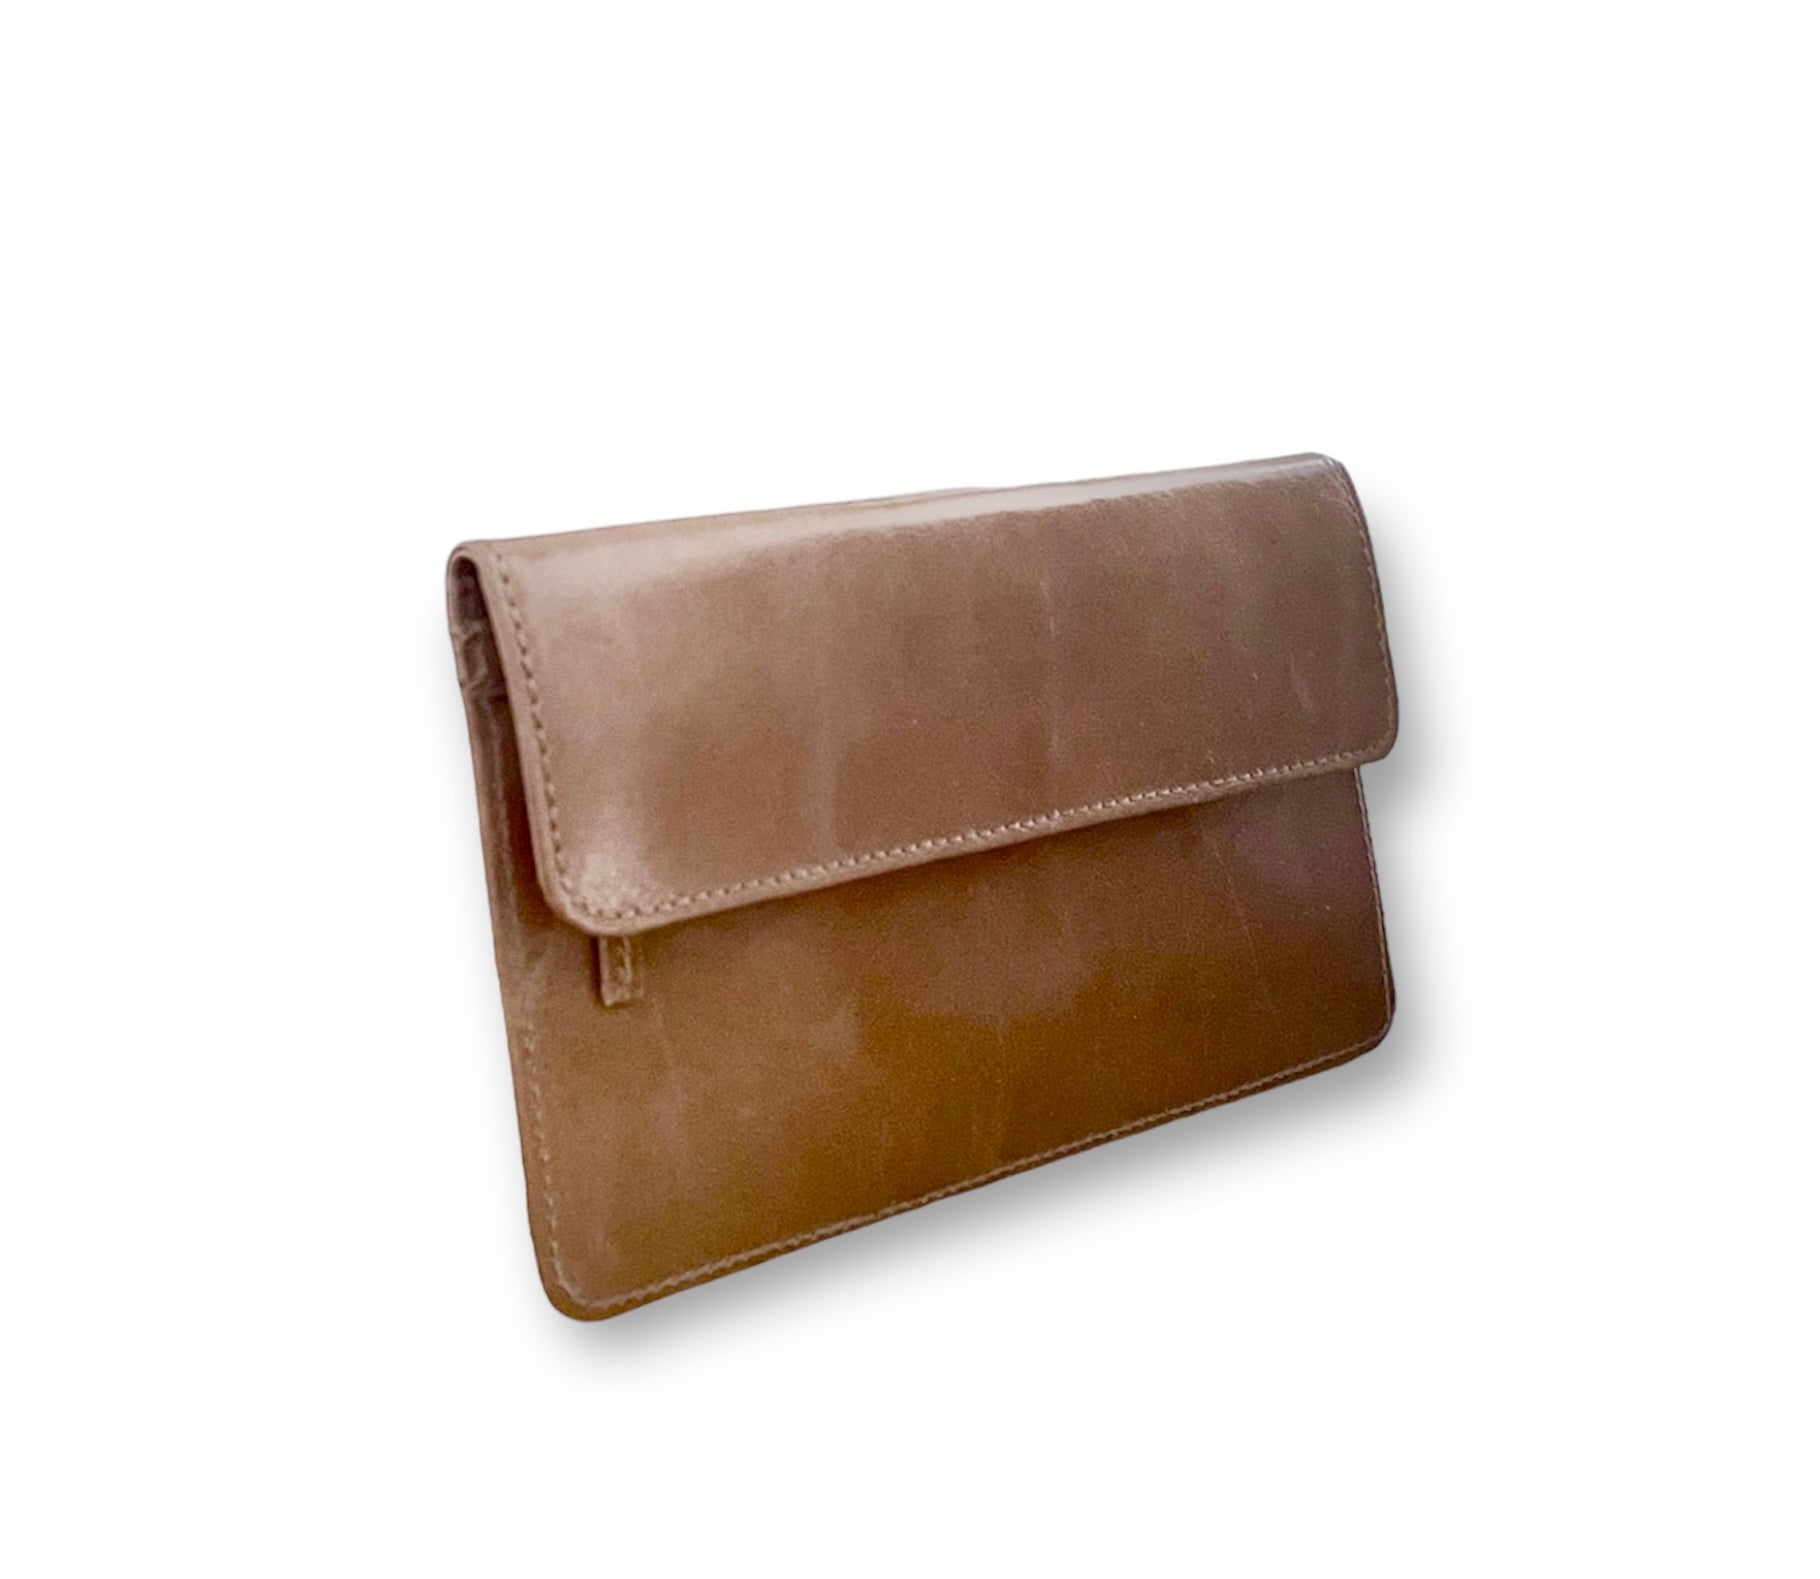 Women's leather wallets, mod 11, new in!